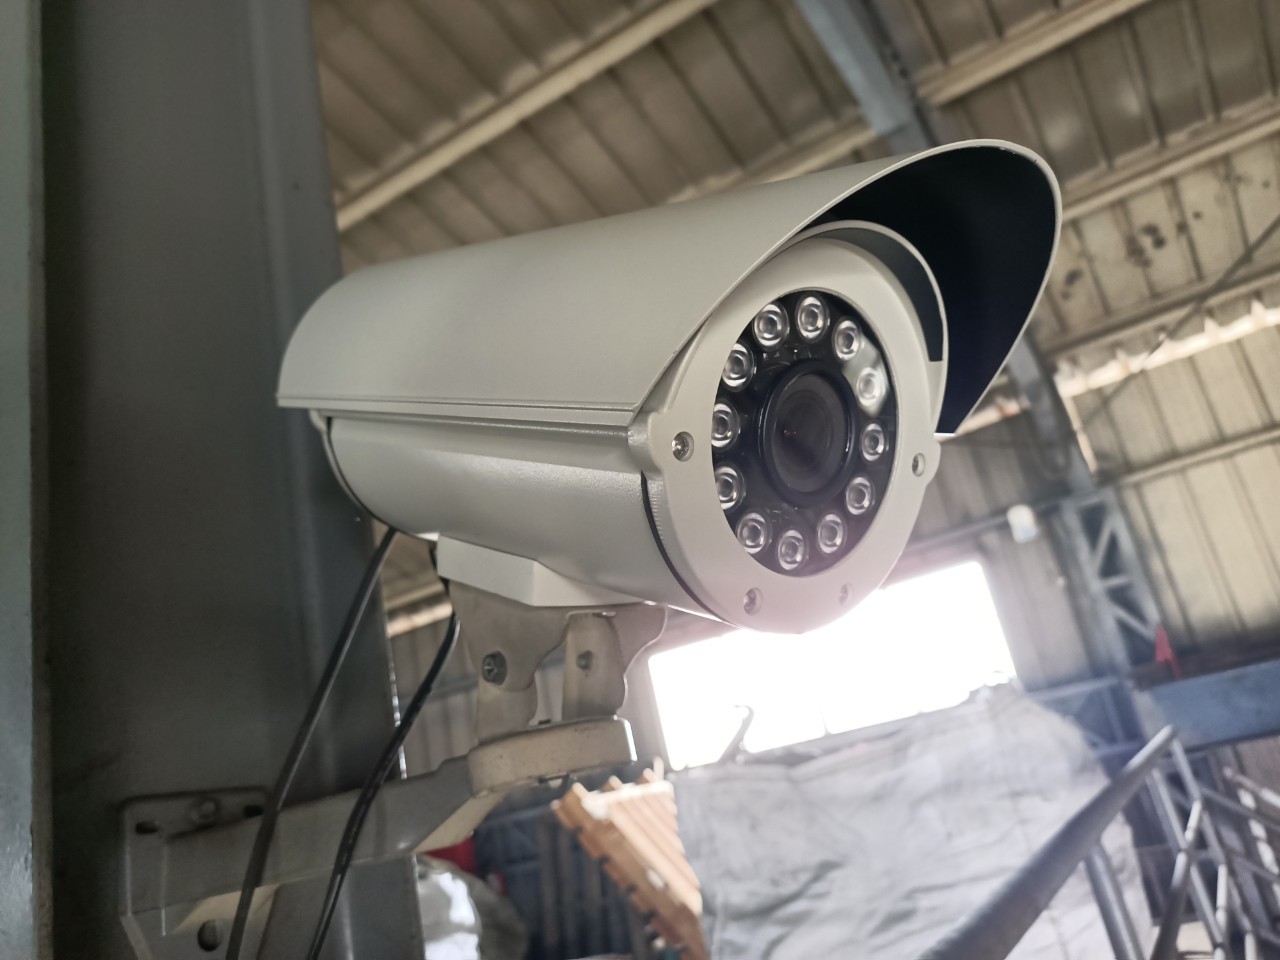 侯公館監視系統更新錄影機與攝影機工程